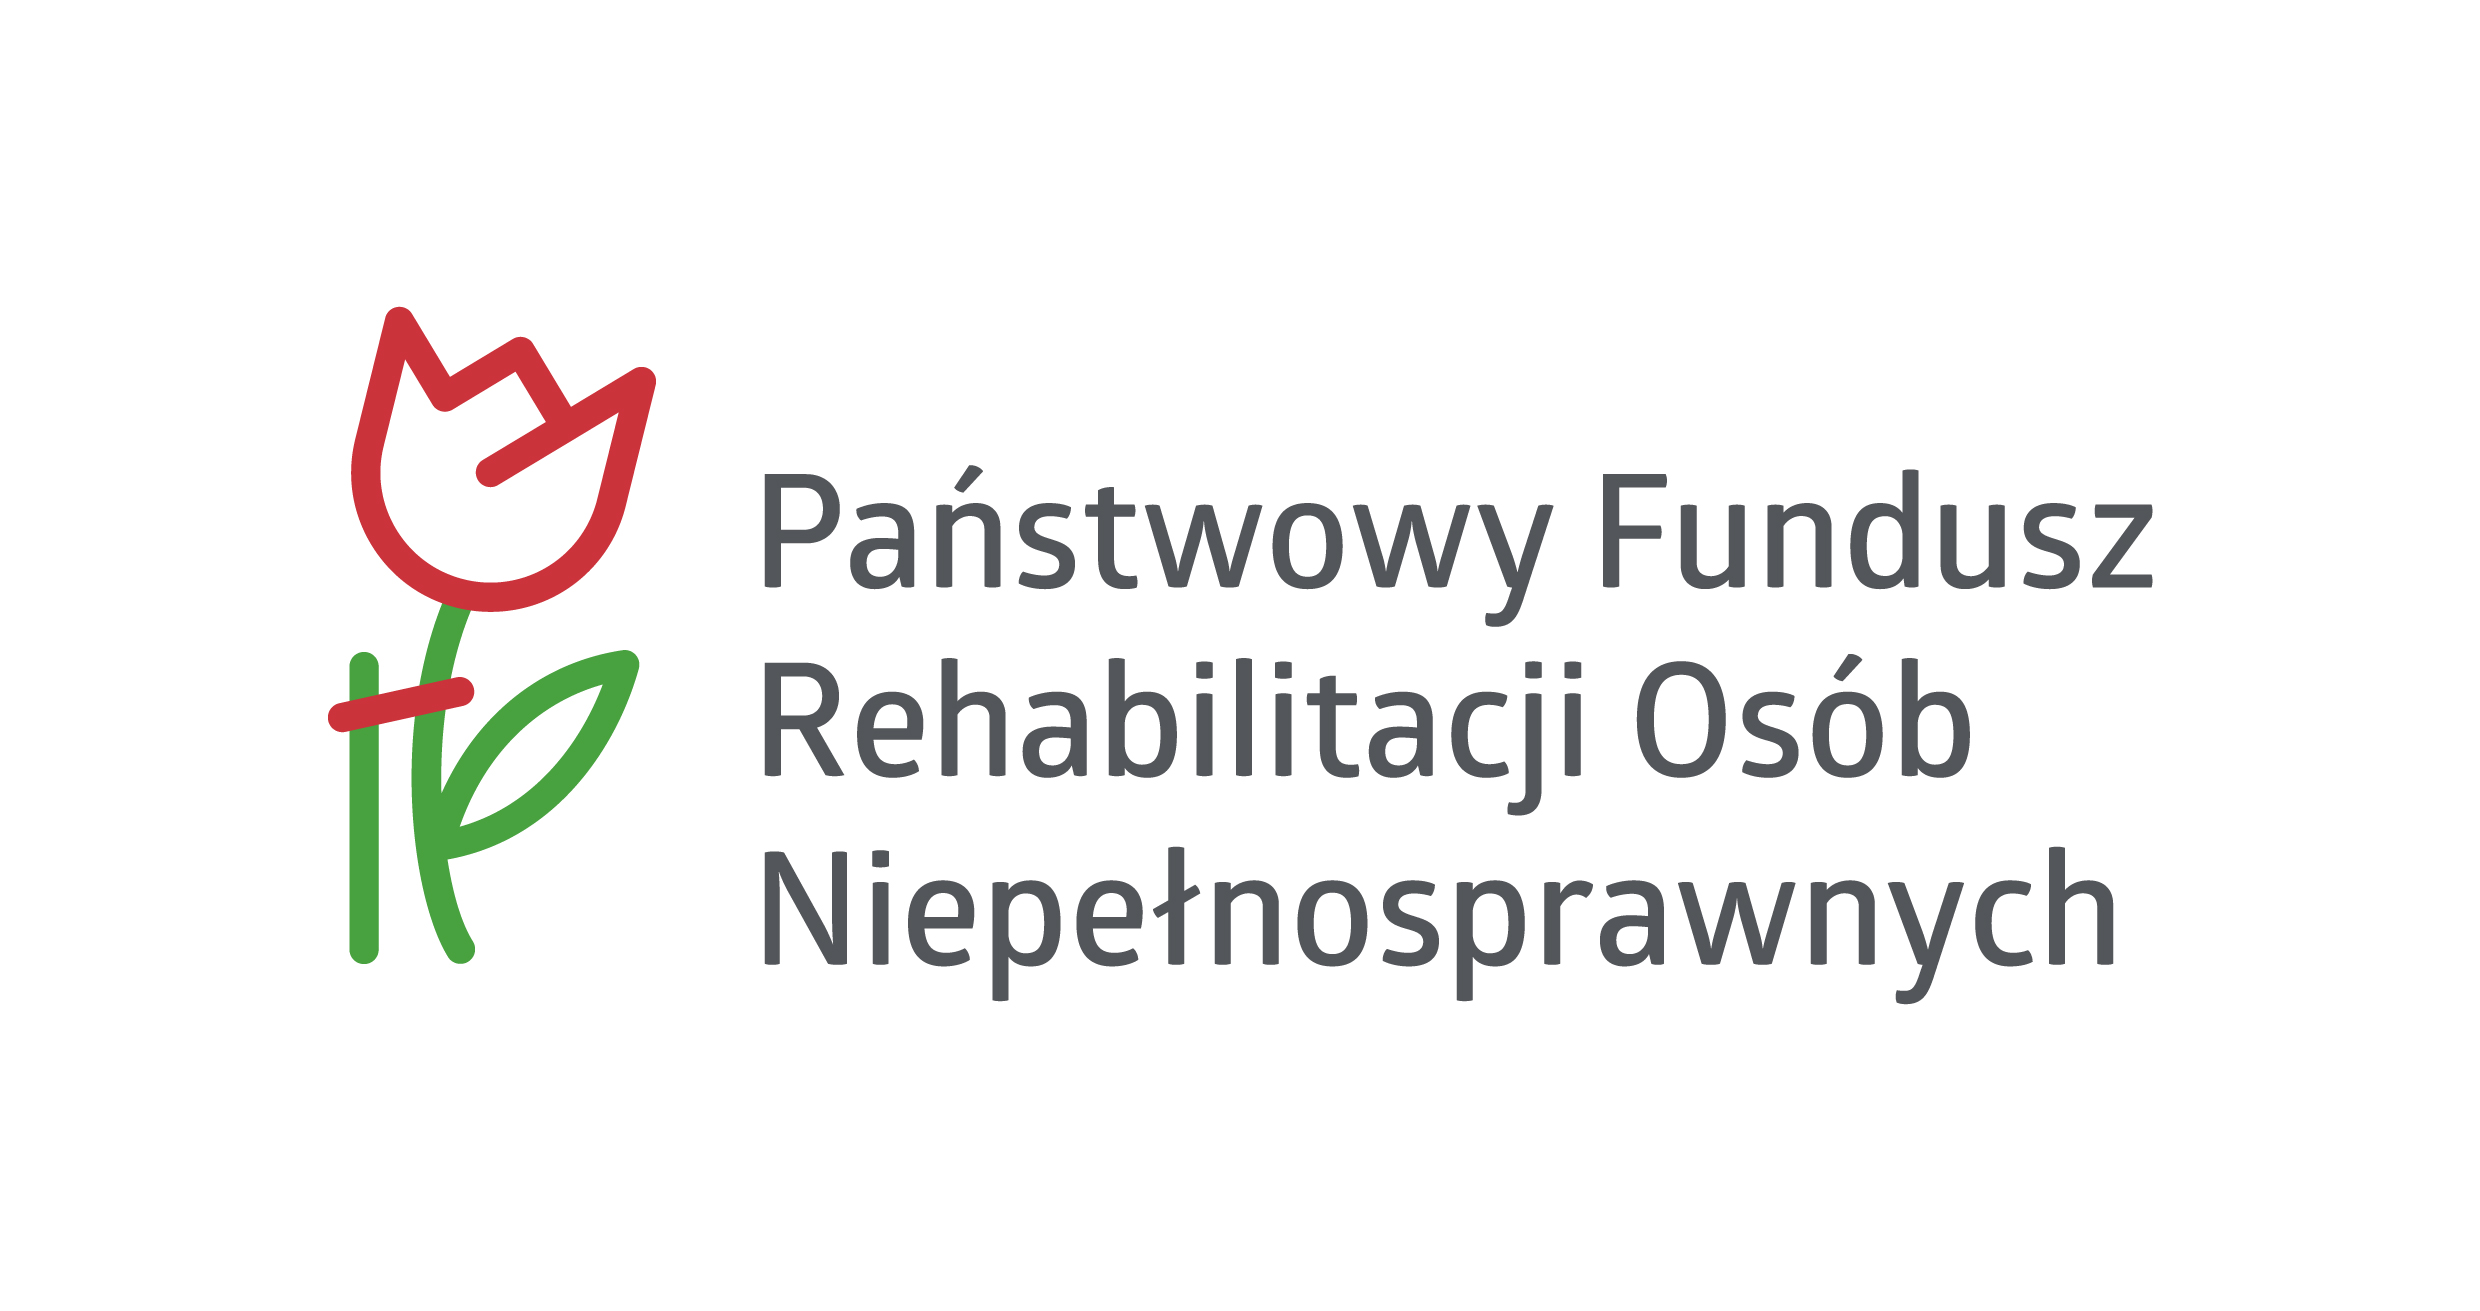 Dostępne Gliwice - poprawa dostępności usług publicznych w gliwickich jednostkach organizacyjnych